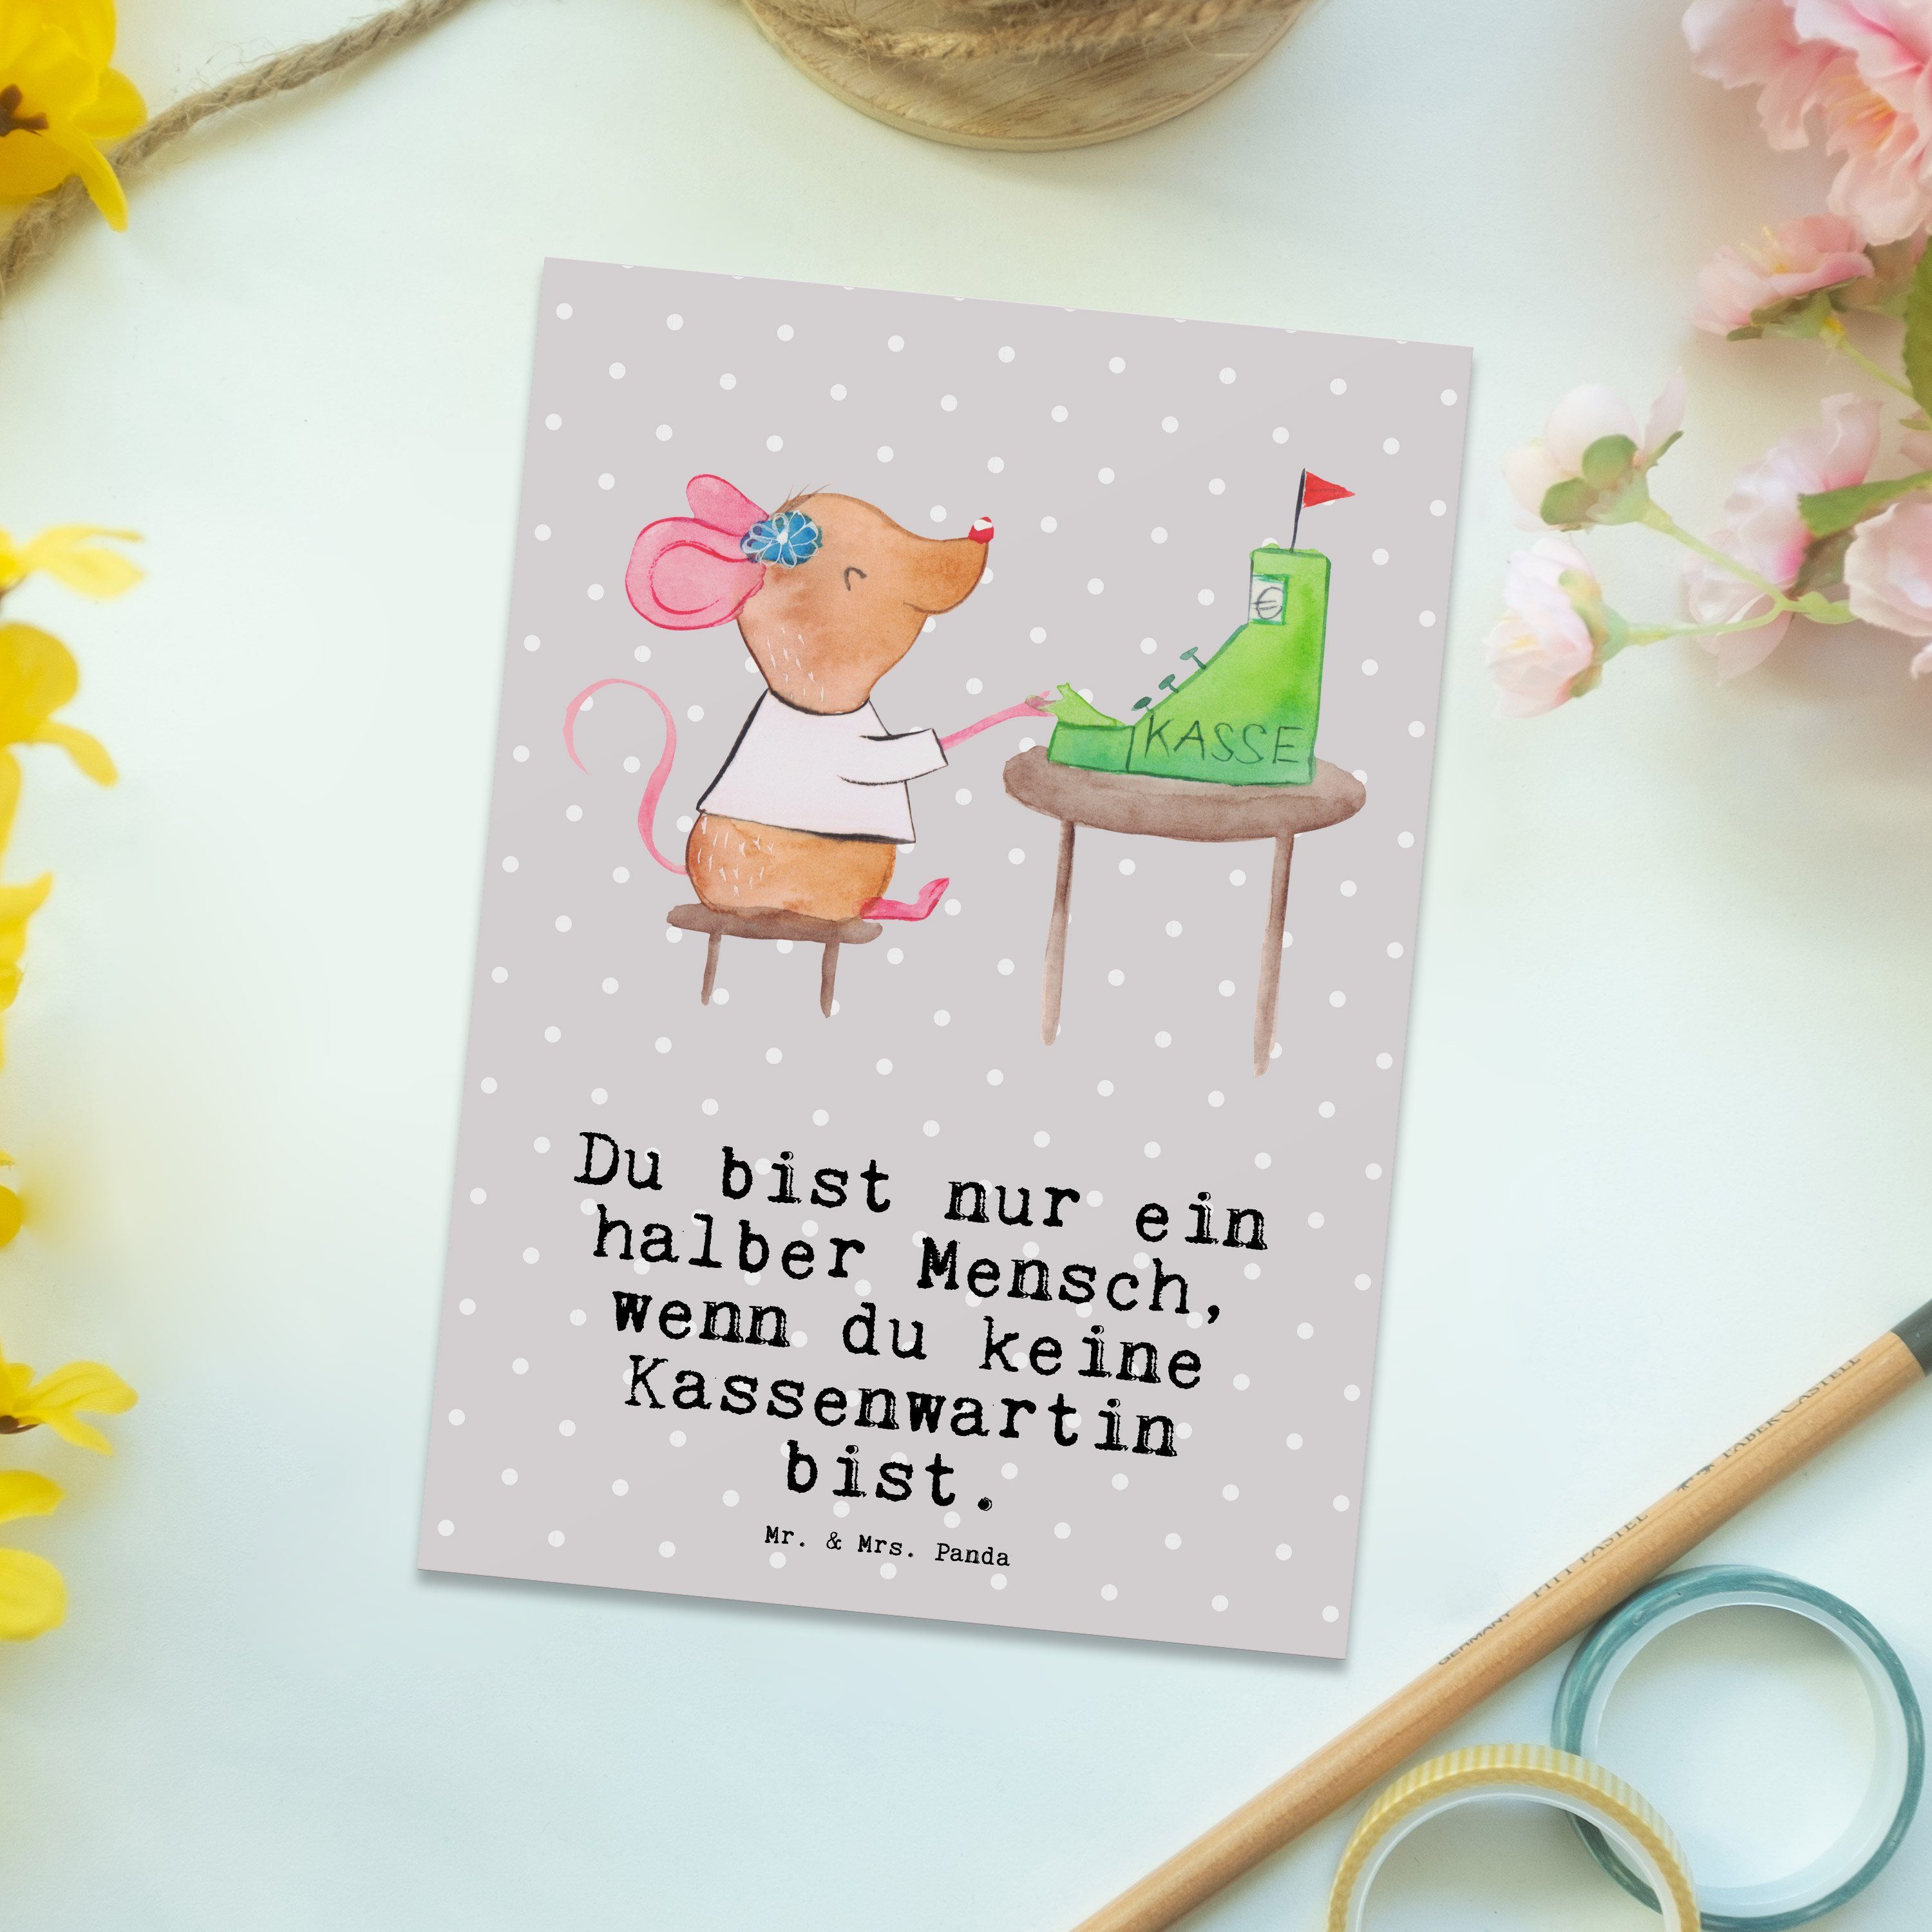 Mr. & Mrs. Panda Postkarte Kassenwartin mit Herz - Grau Pastell - Geschenk, Rente, Dankeskarte